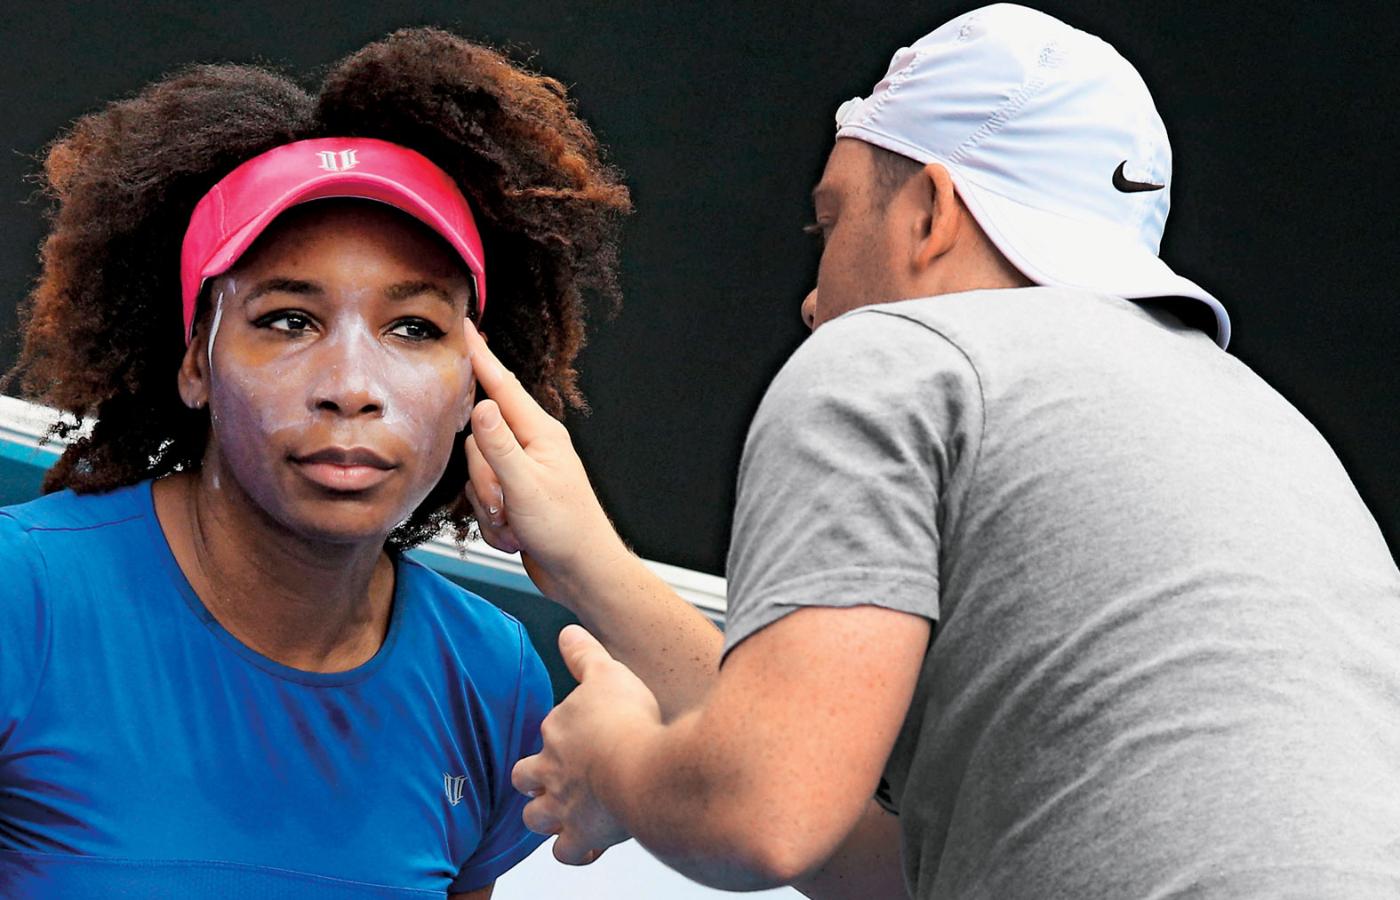 Wbrew obiegowym opiniom osoby o ciemnym kolorze skóry też muszą zabezpieczać
się przed słońcem. Dlatego tenisistka Venus Williams nie żałuje kremu z filtrem. Żeby był skuteczny, na 1 cm kw. skóry trzeba nałożyć 2 mg kremu.